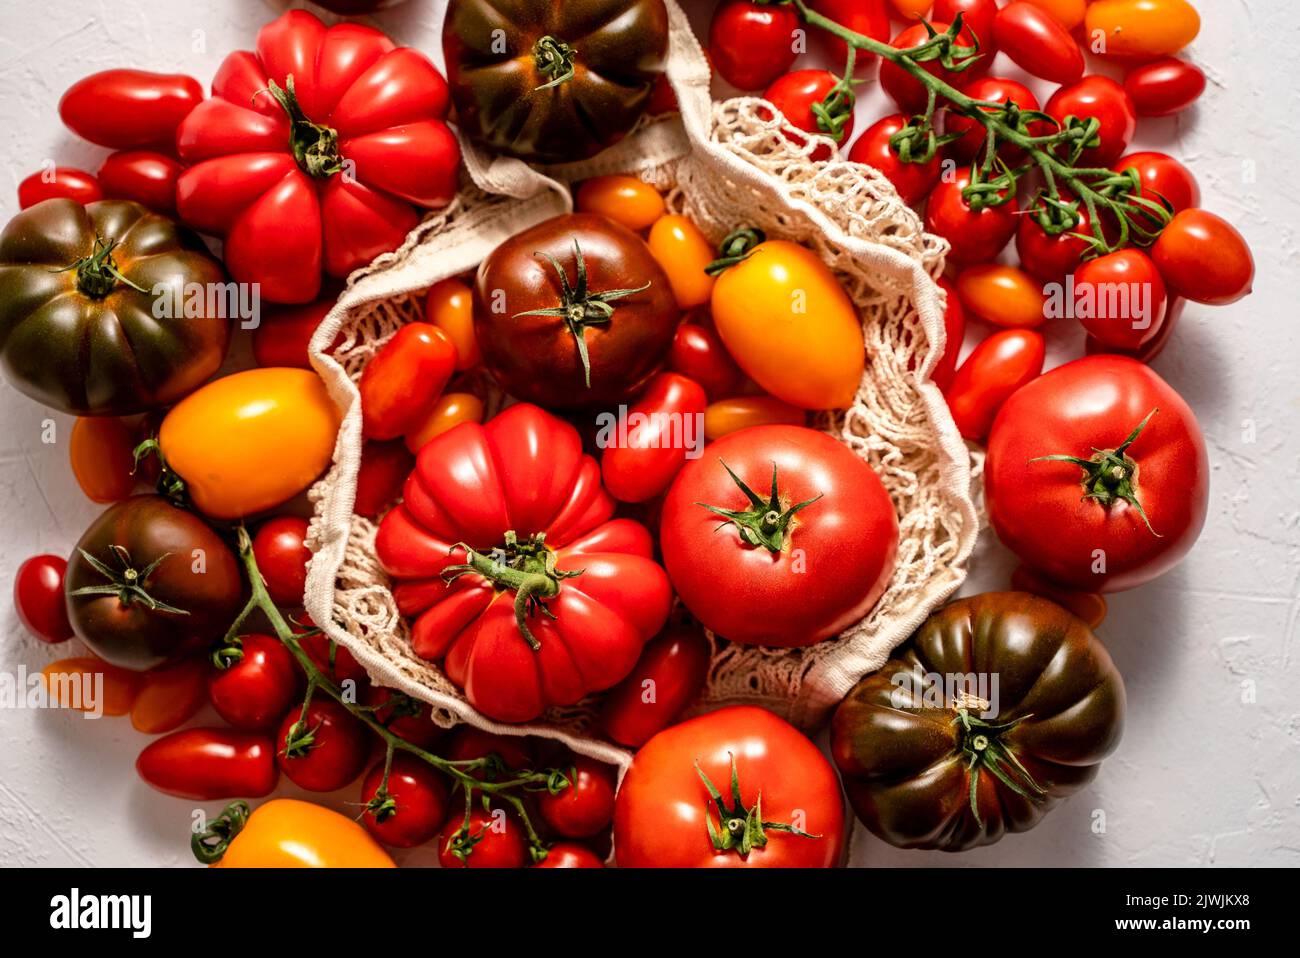 Tomates sur la table. Tomates de différentes variétés Banque D'Images